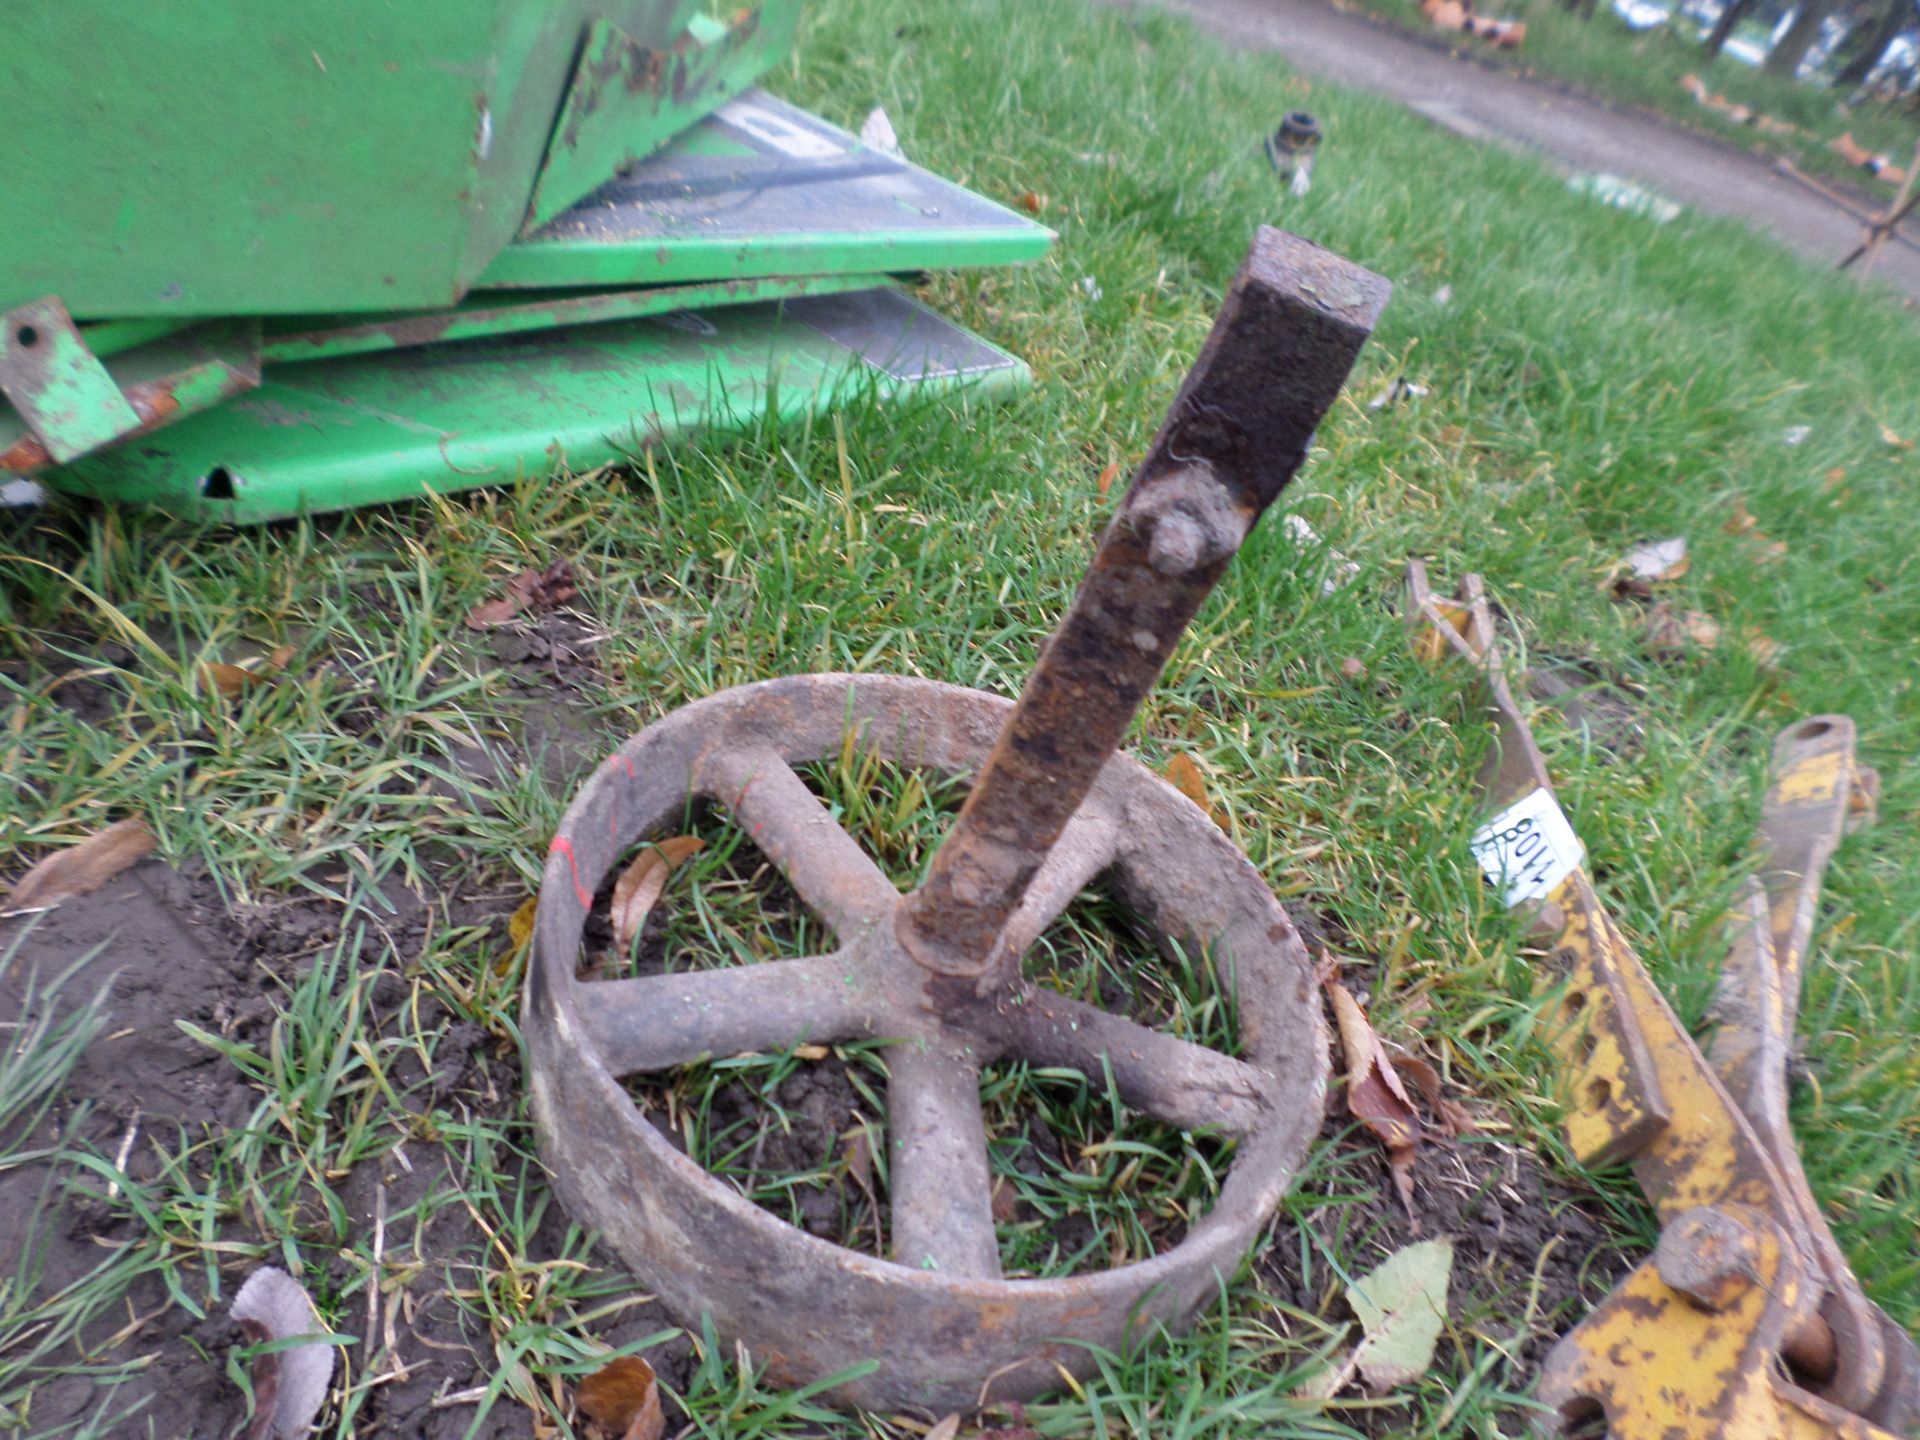 Cast iron wheel on axle